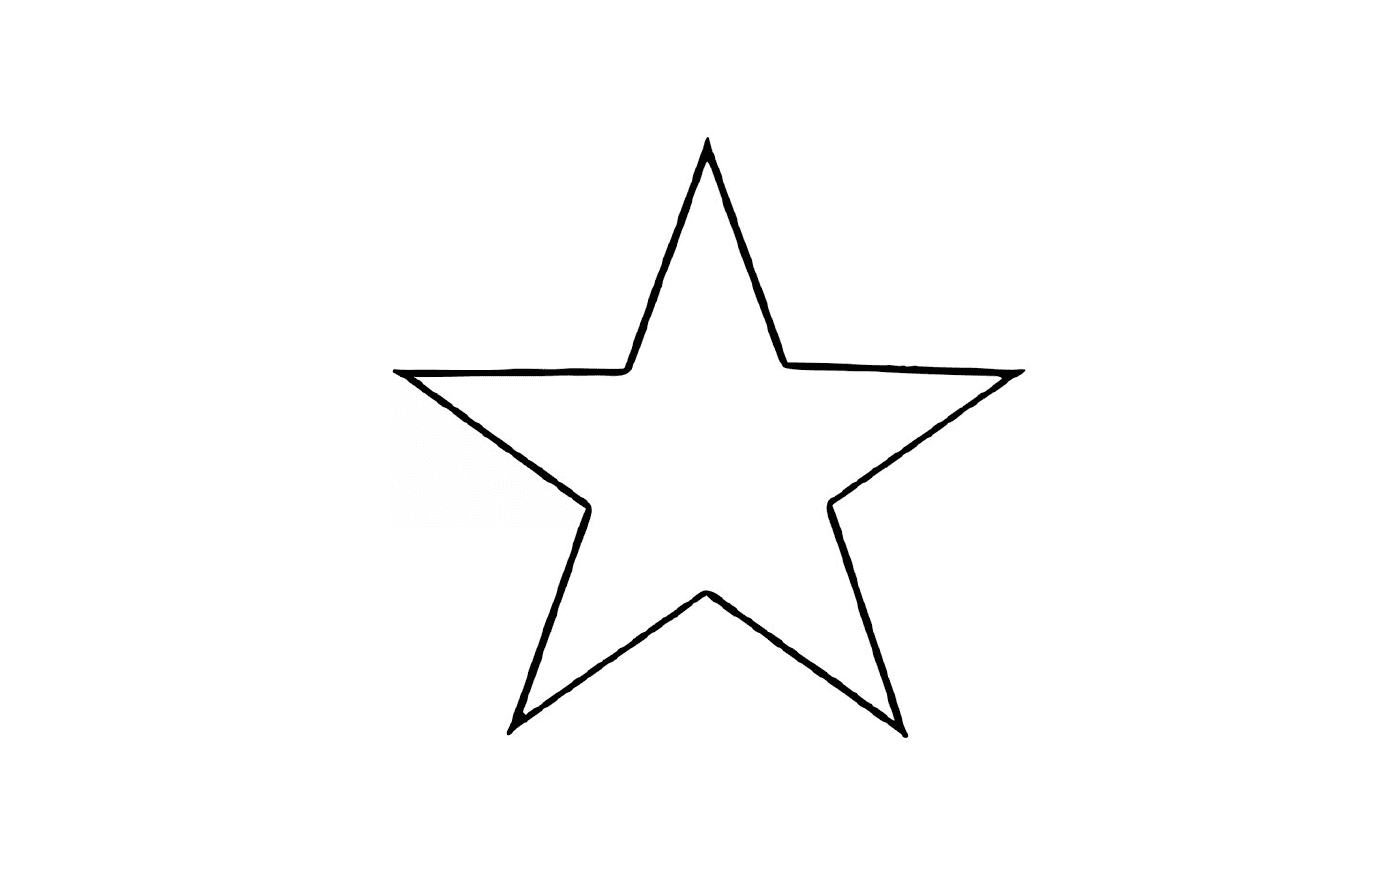   Une étoile 